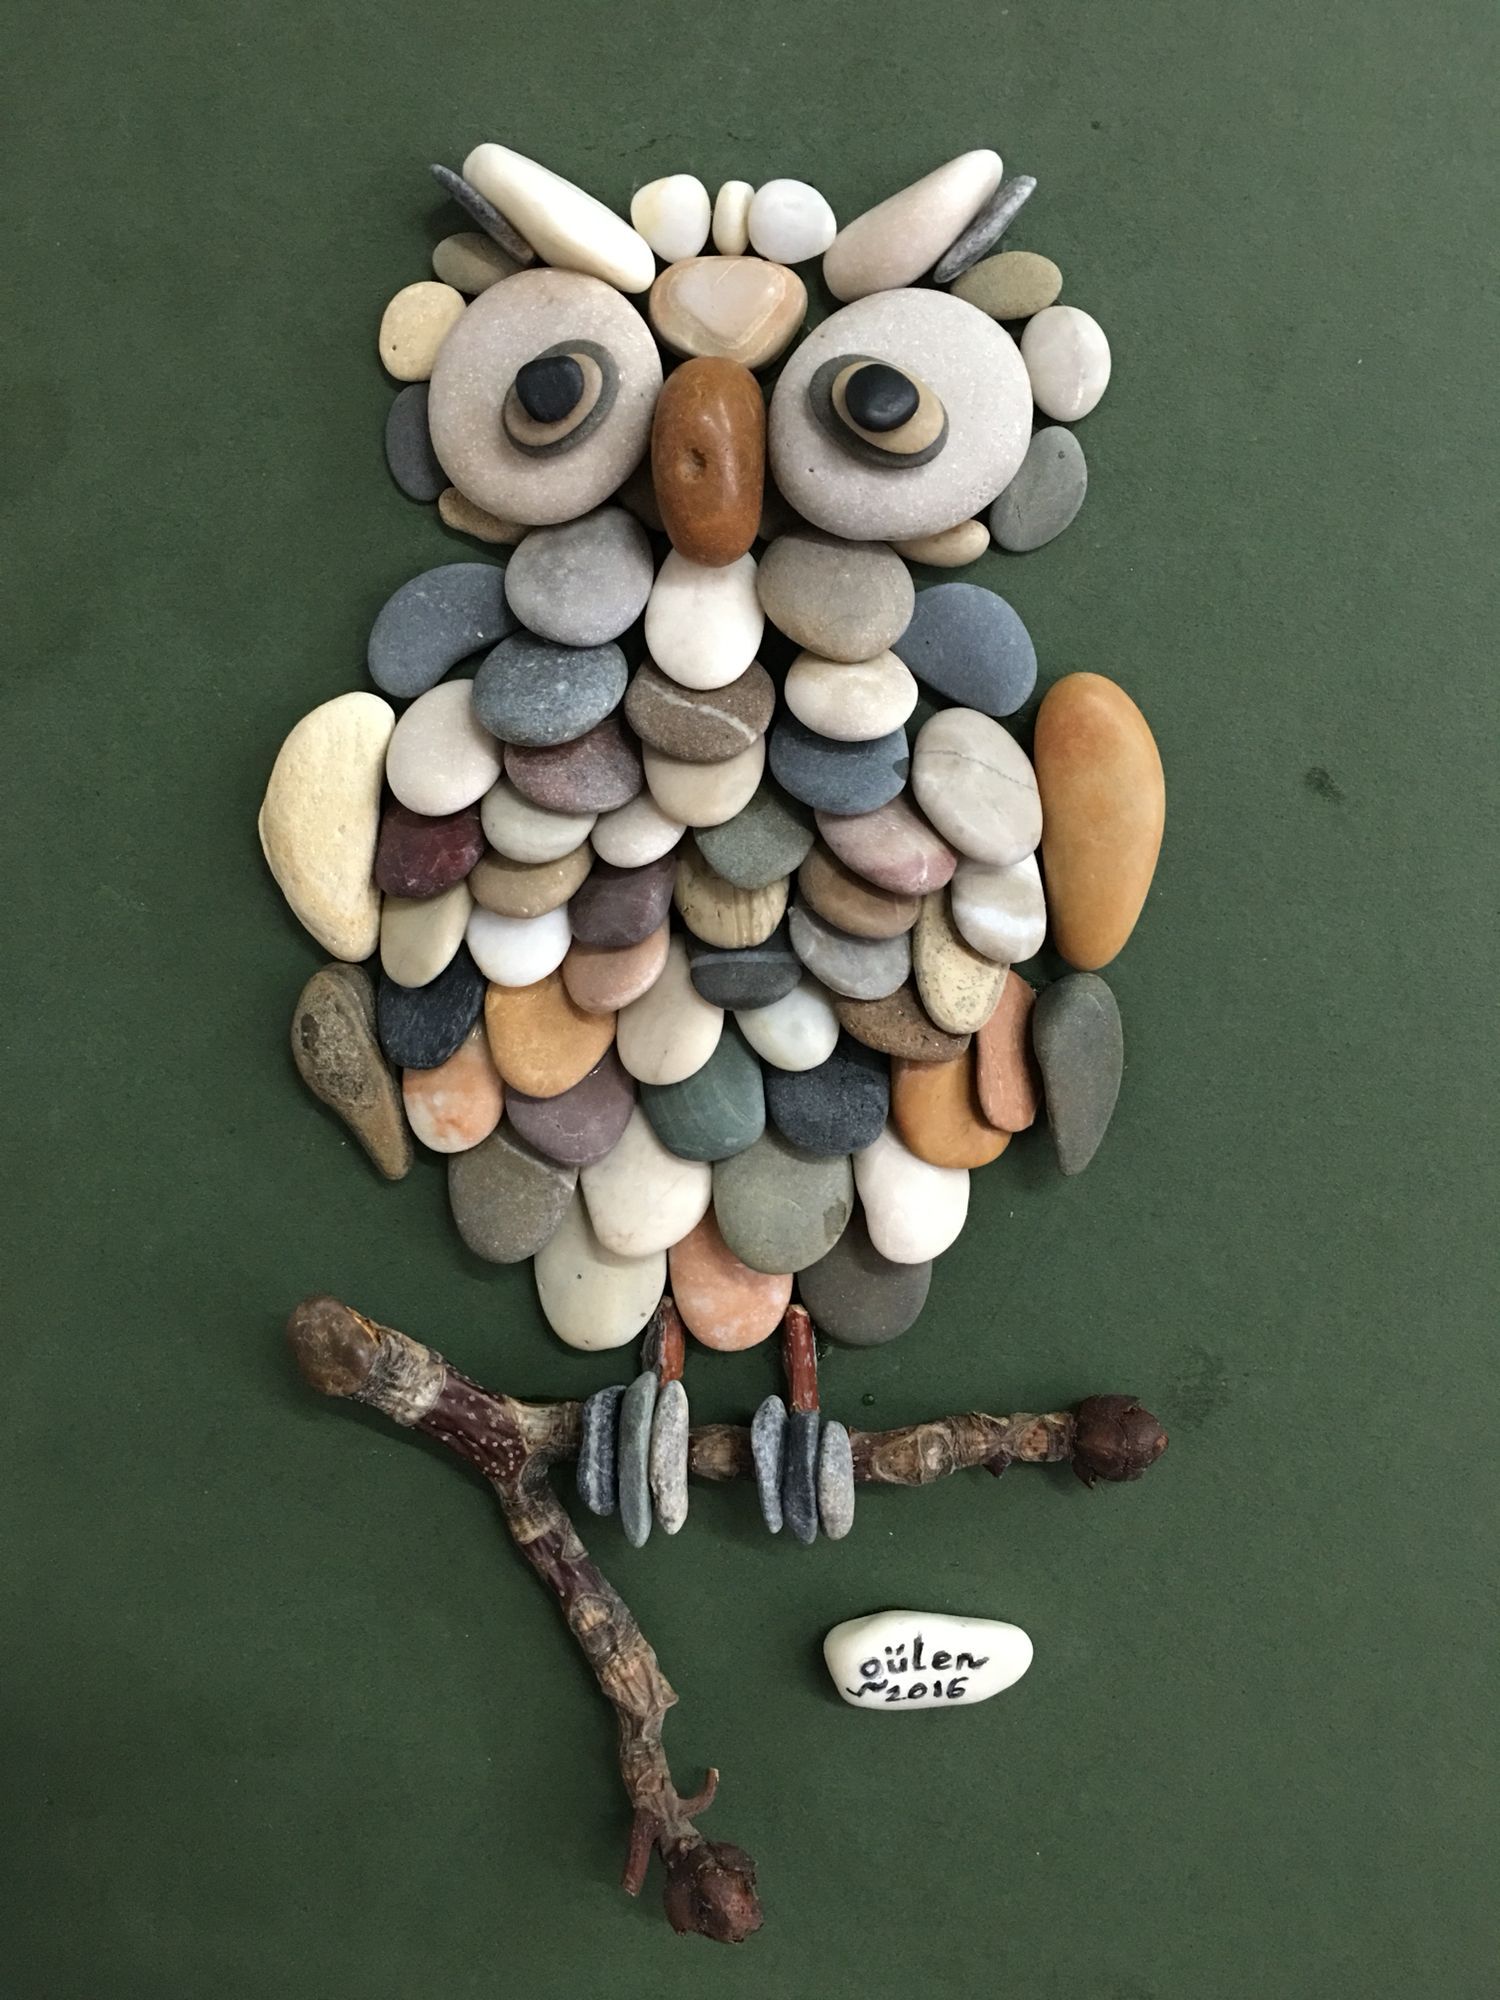 Pebble art owl by gülen